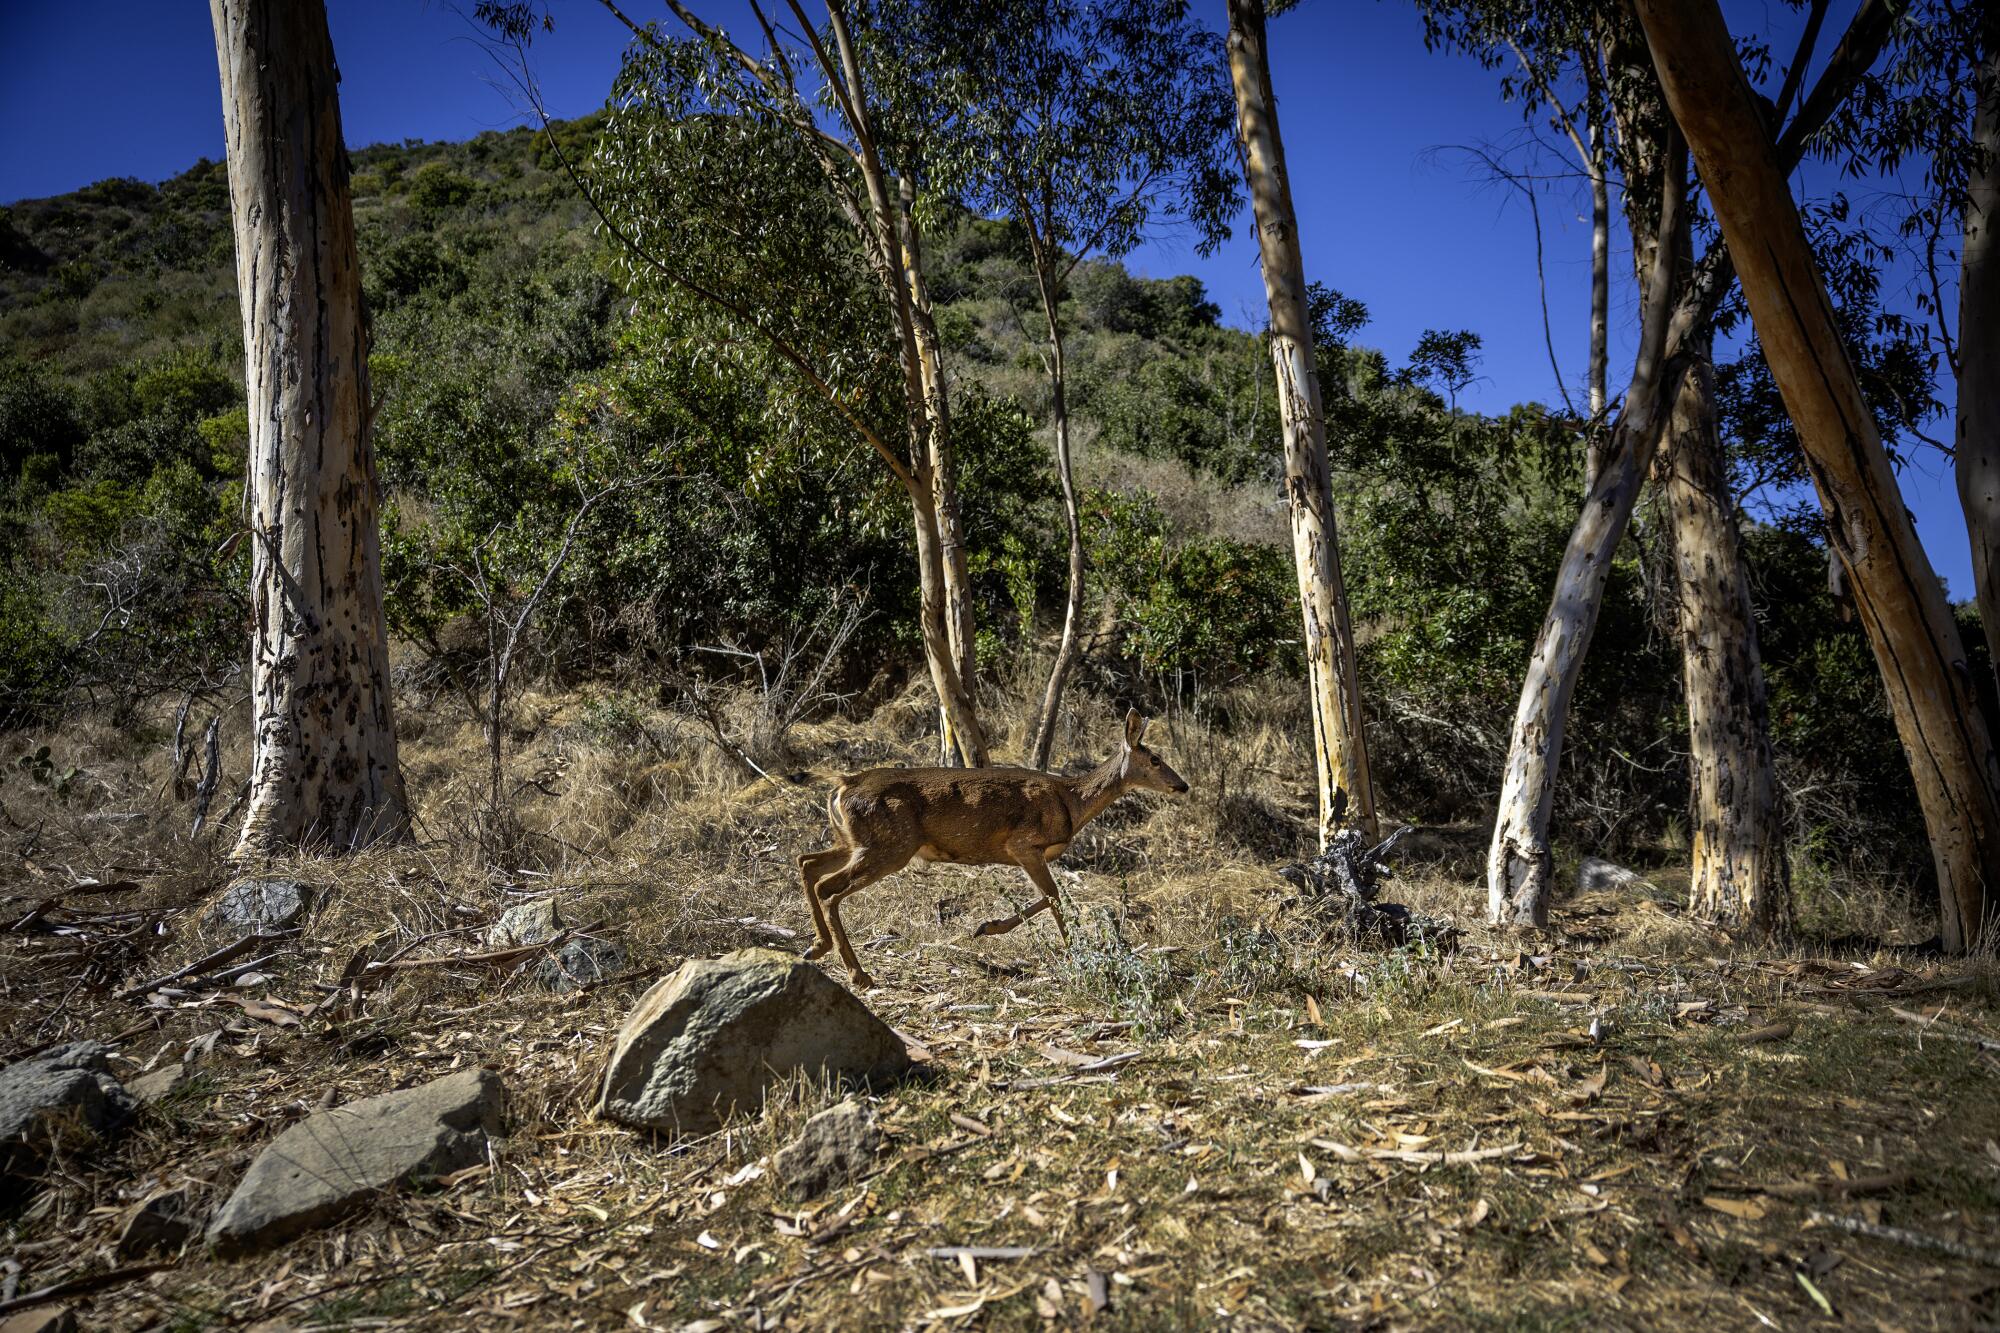 A mule deer walks on a hillside.